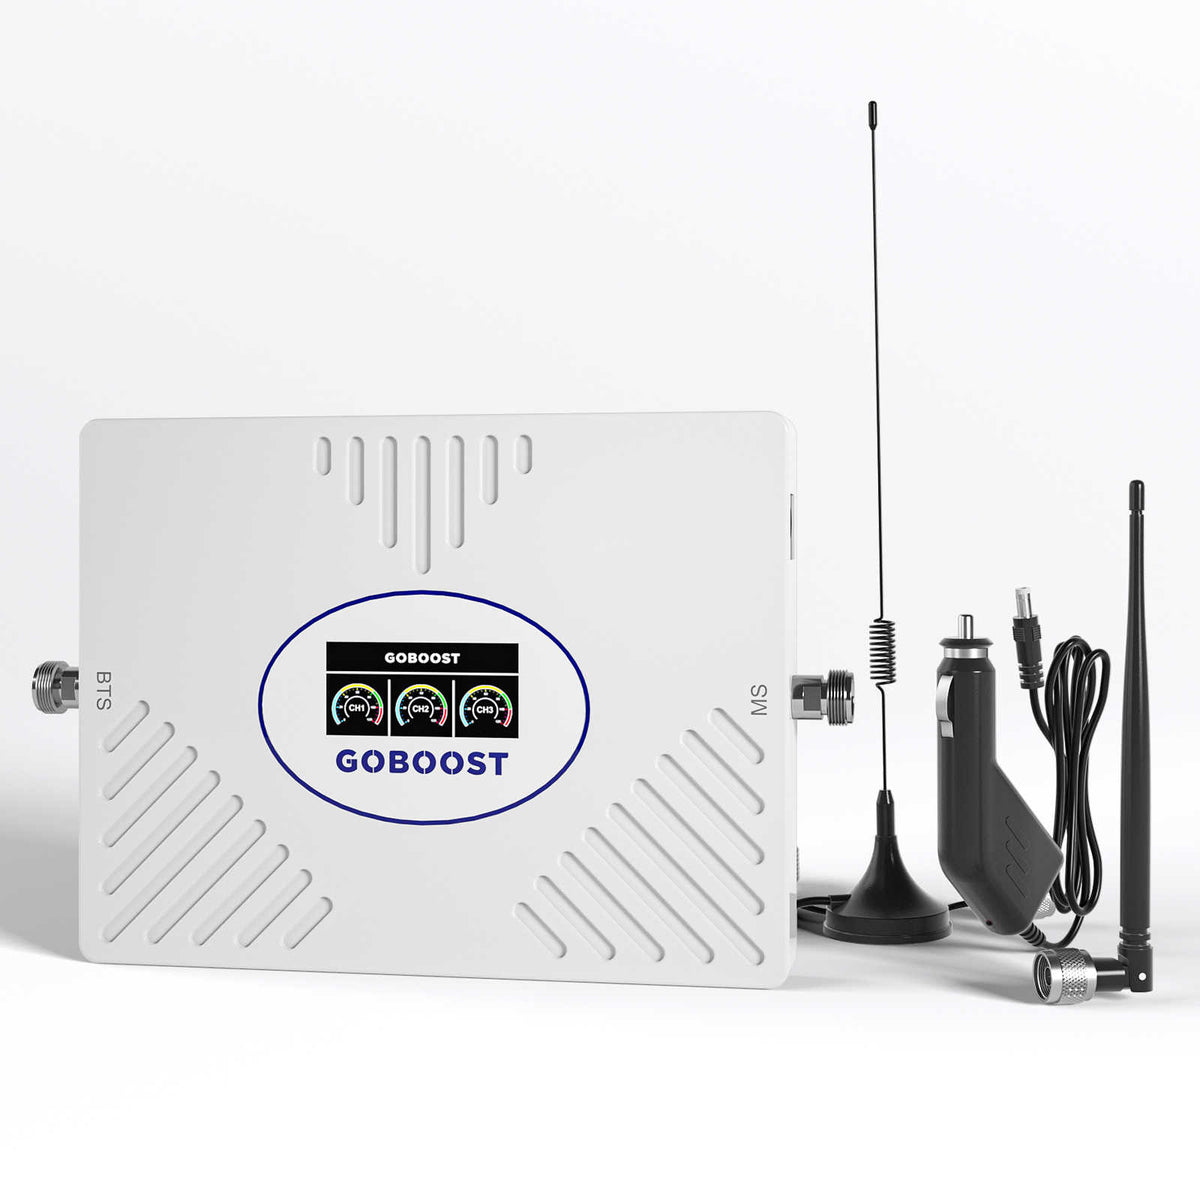 El amplificador de señal celular de gran oferta GOBOOST para coche admite tres bandas de frecuencia 70dB de alta ganancia